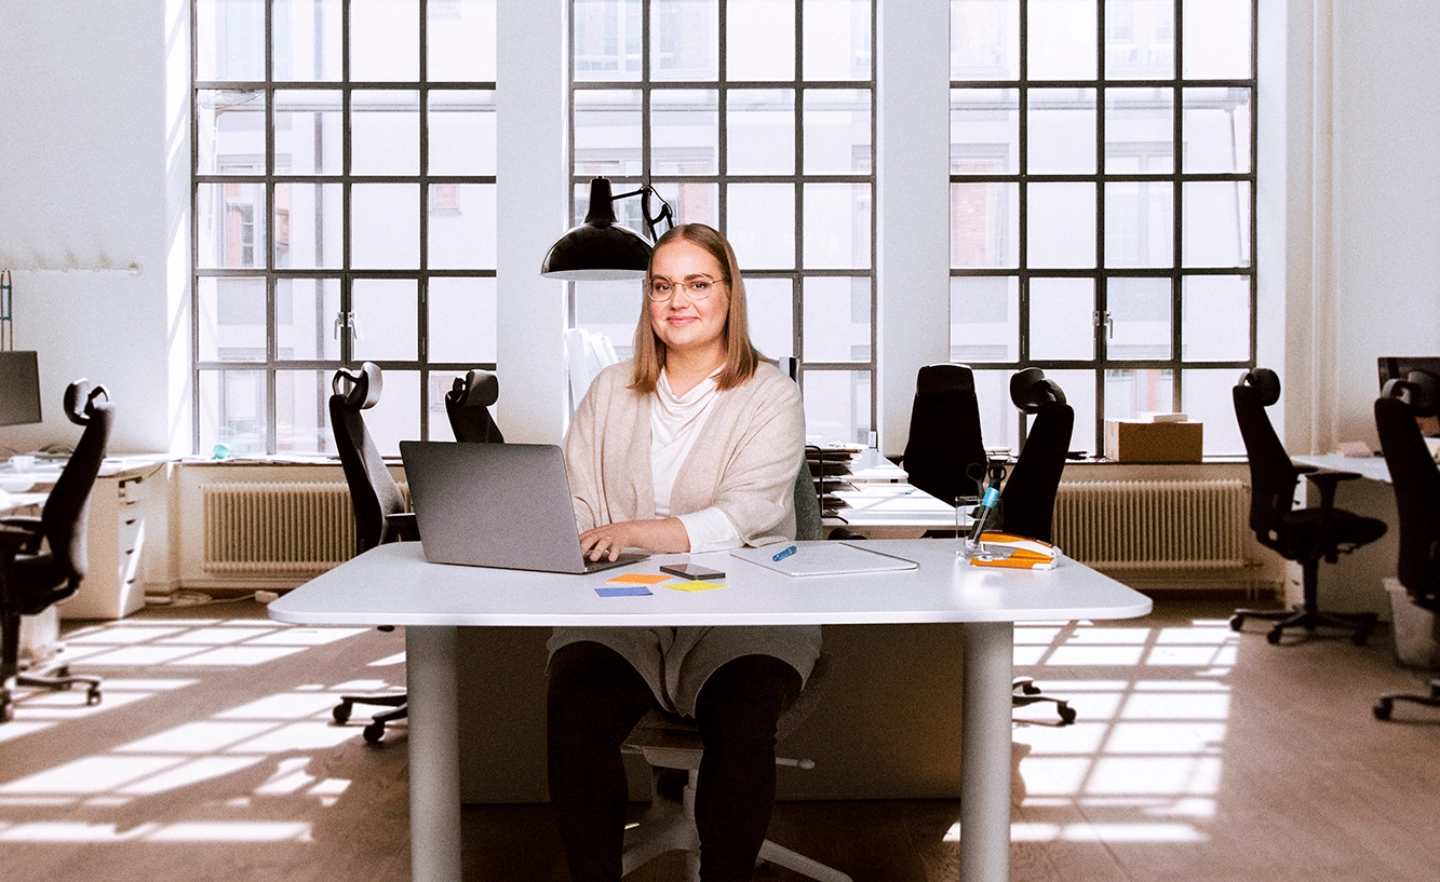 Työnantajaneuvonnan asiakaspalvelija istuu työpöydän ääressä keskellä start-up-toimistoa - Work in Finland International Recruitment Advice Service for Employers